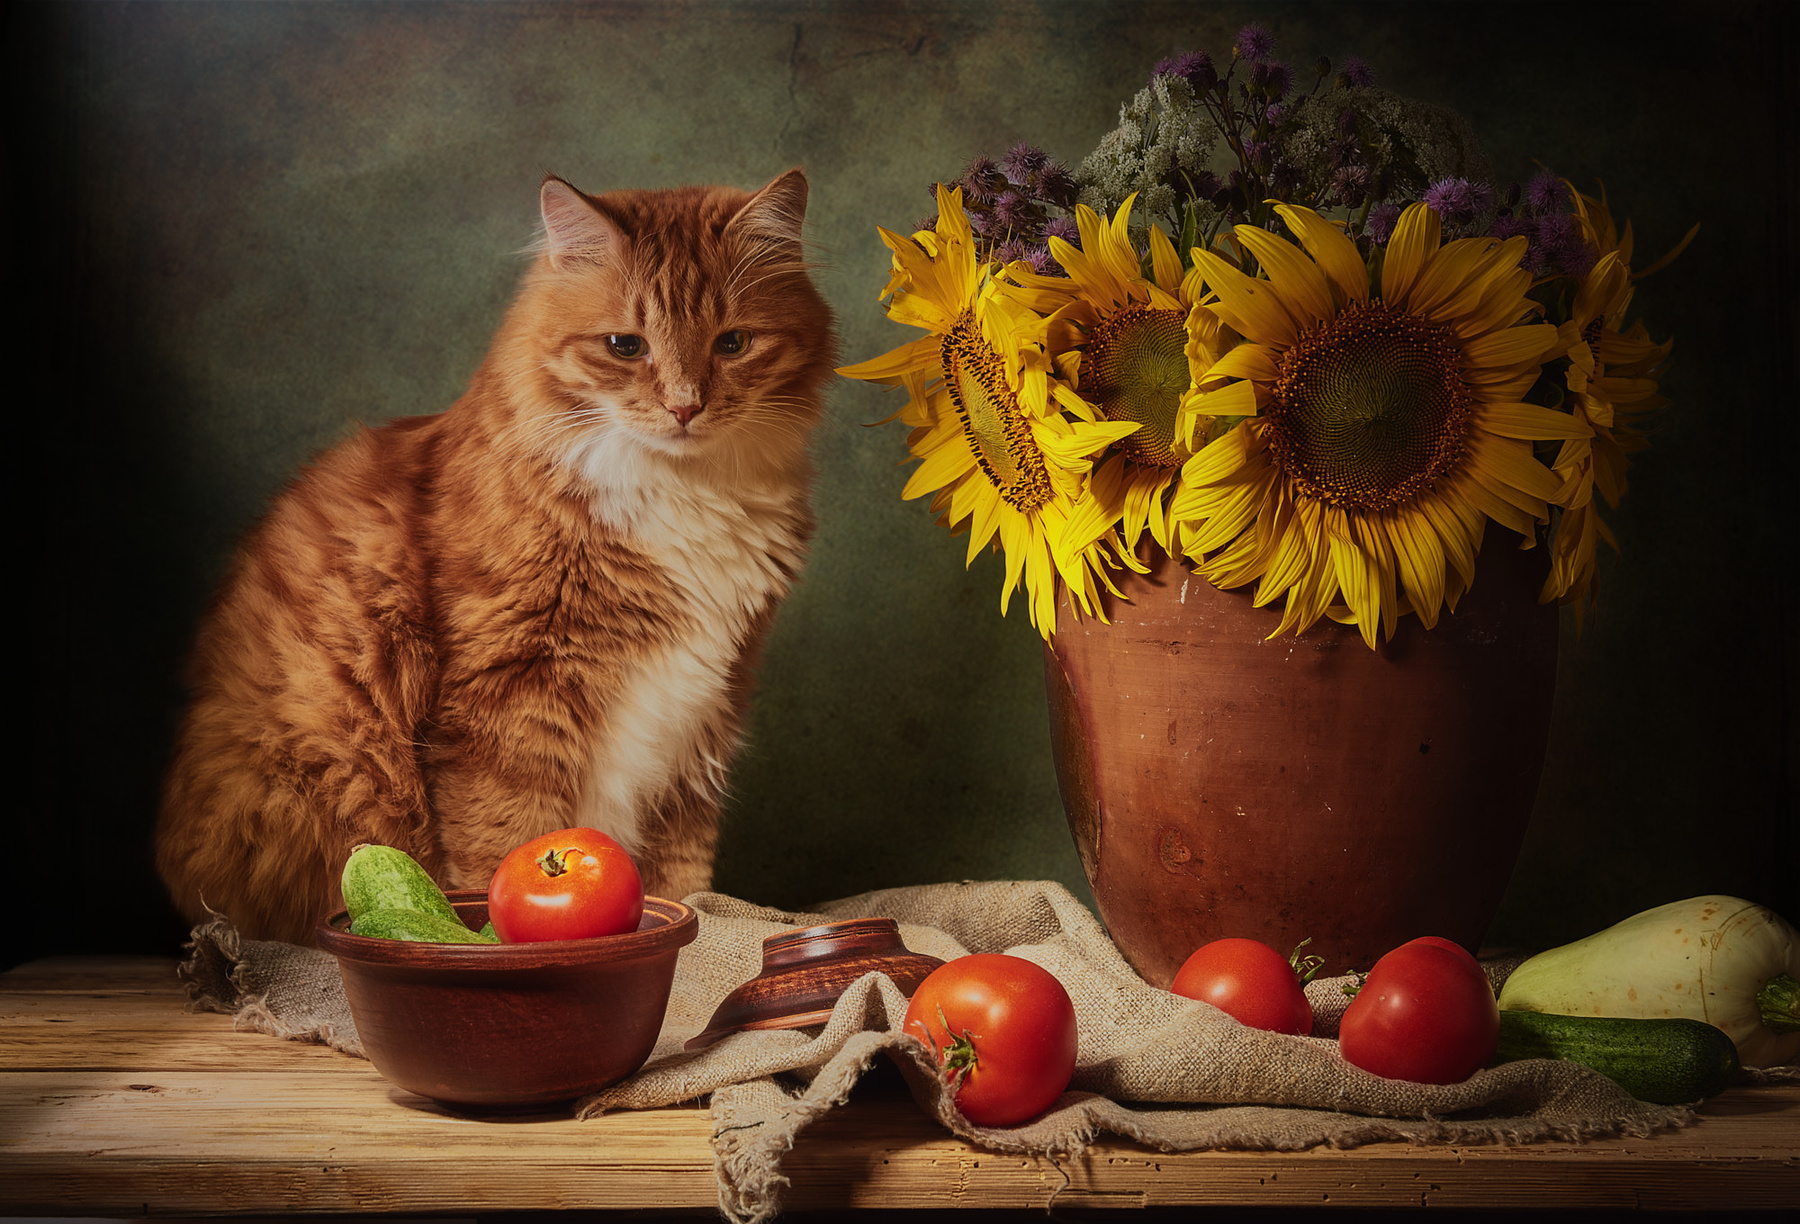 Рыжий кот и подсолнухи. натюрморт постановка композиция сцена кот питомец любимец рыжий подсолнухи